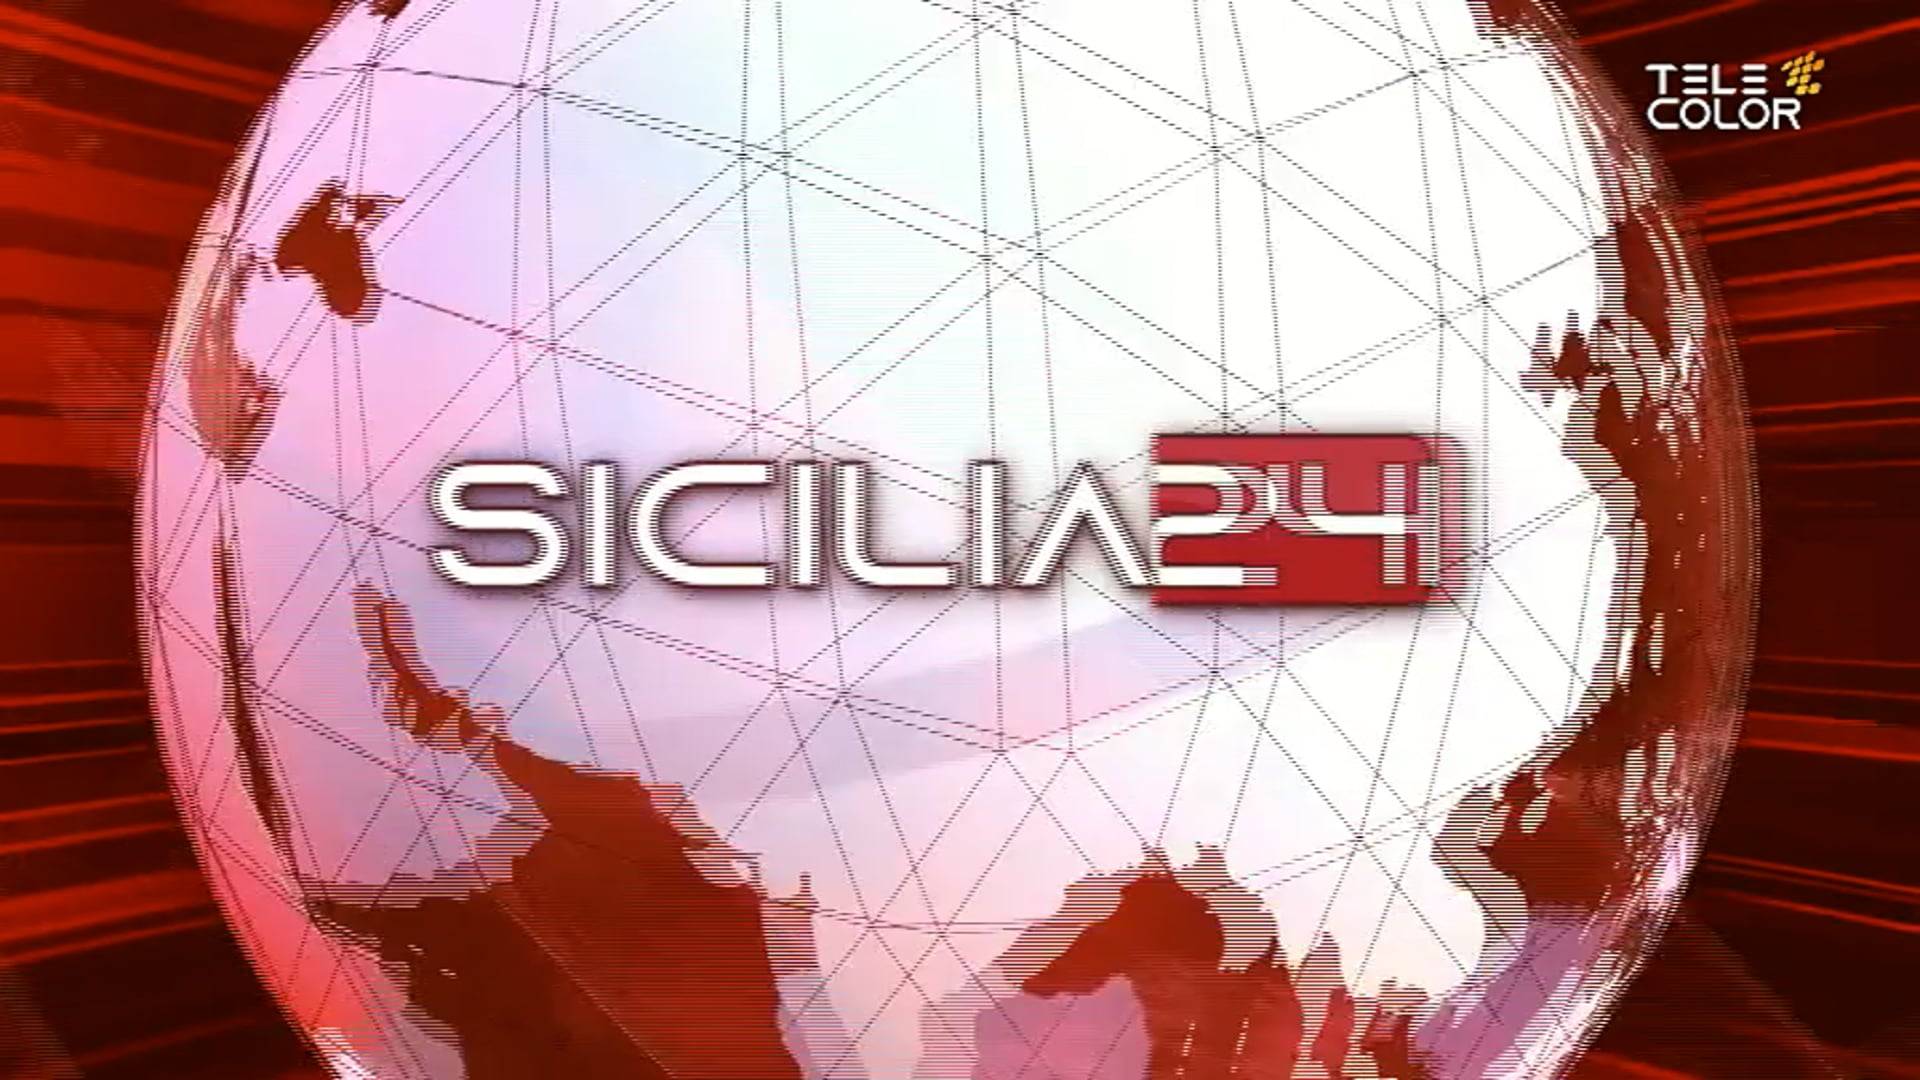 sicilia24-rassegna-stampa-07-aprile-2022-vimeo-thumbnail.jpg